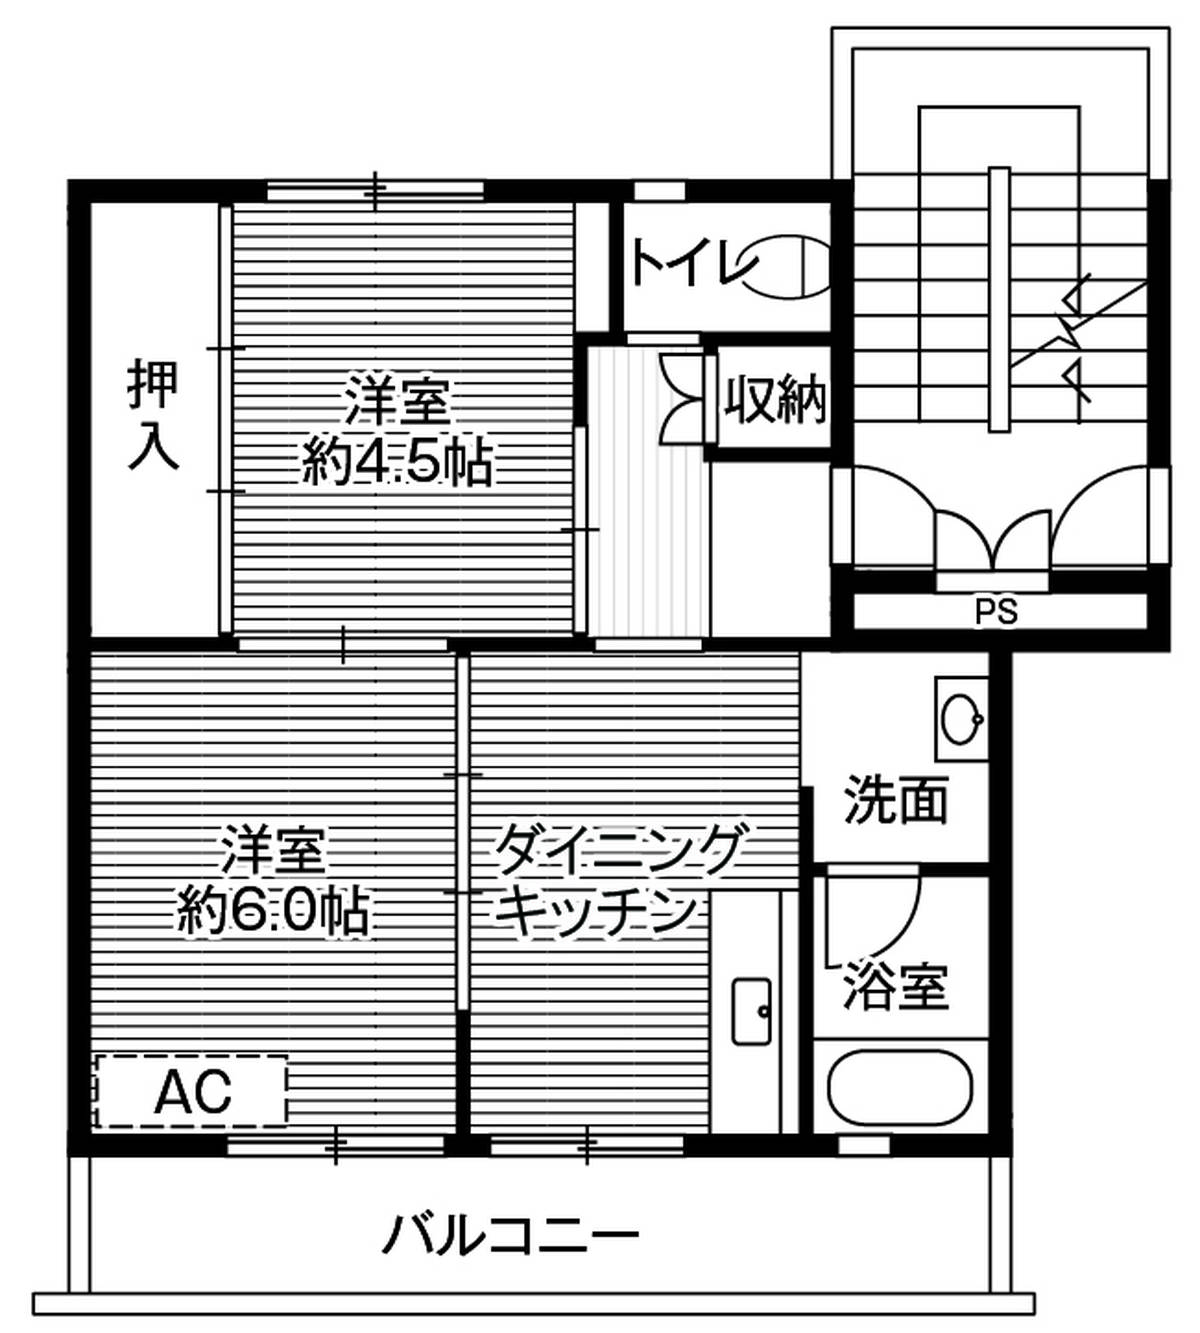 2DK floorplan of Village House Oze in Seki-shi